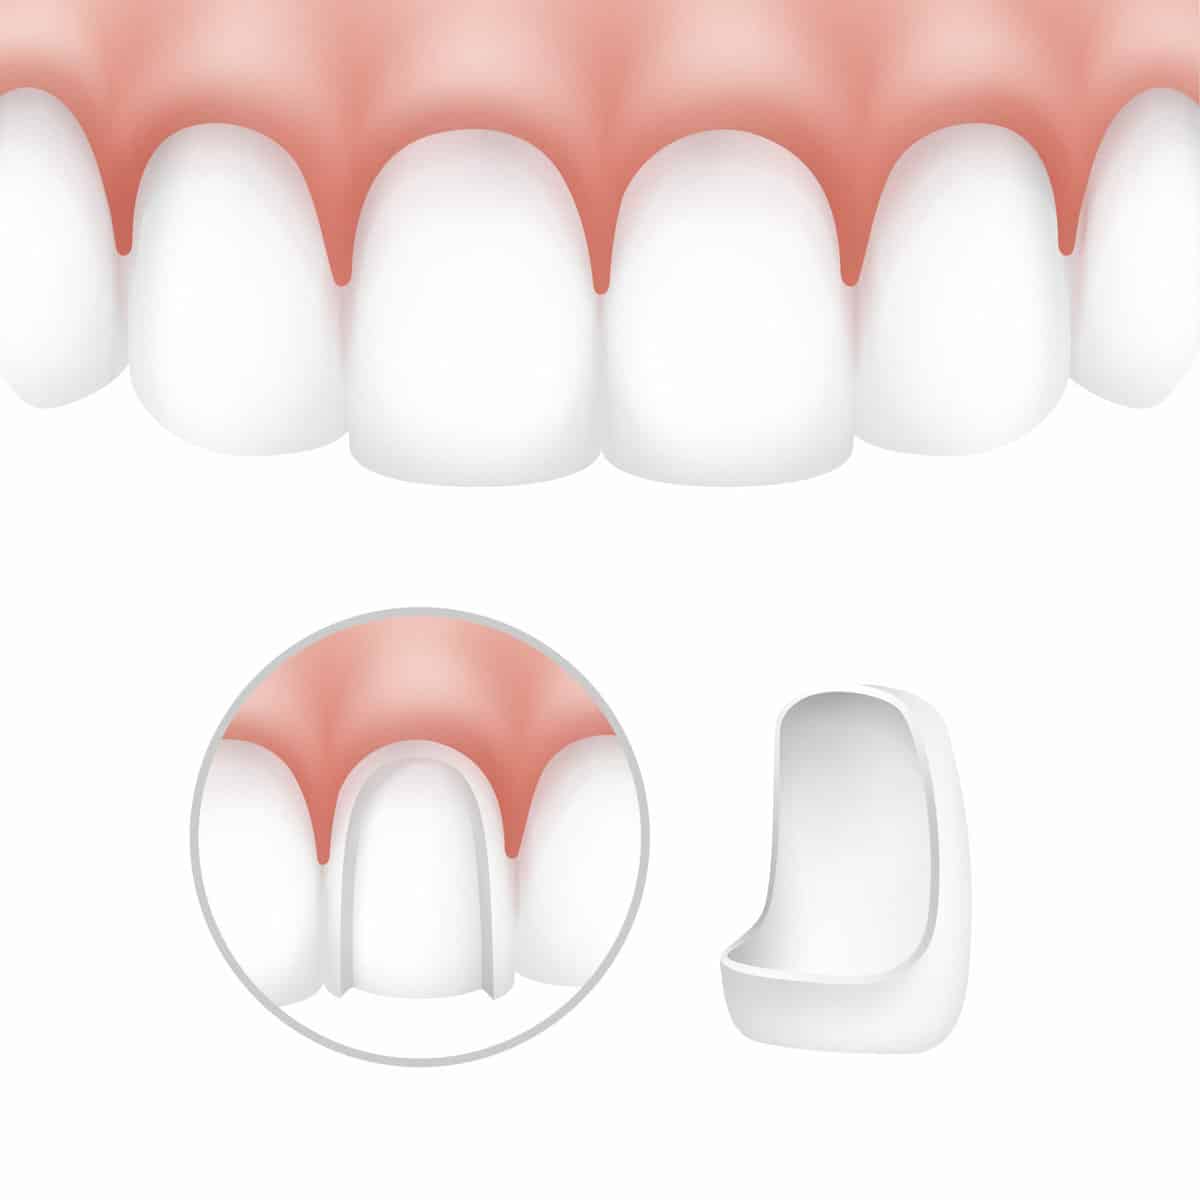 Dental veneers on human teeth